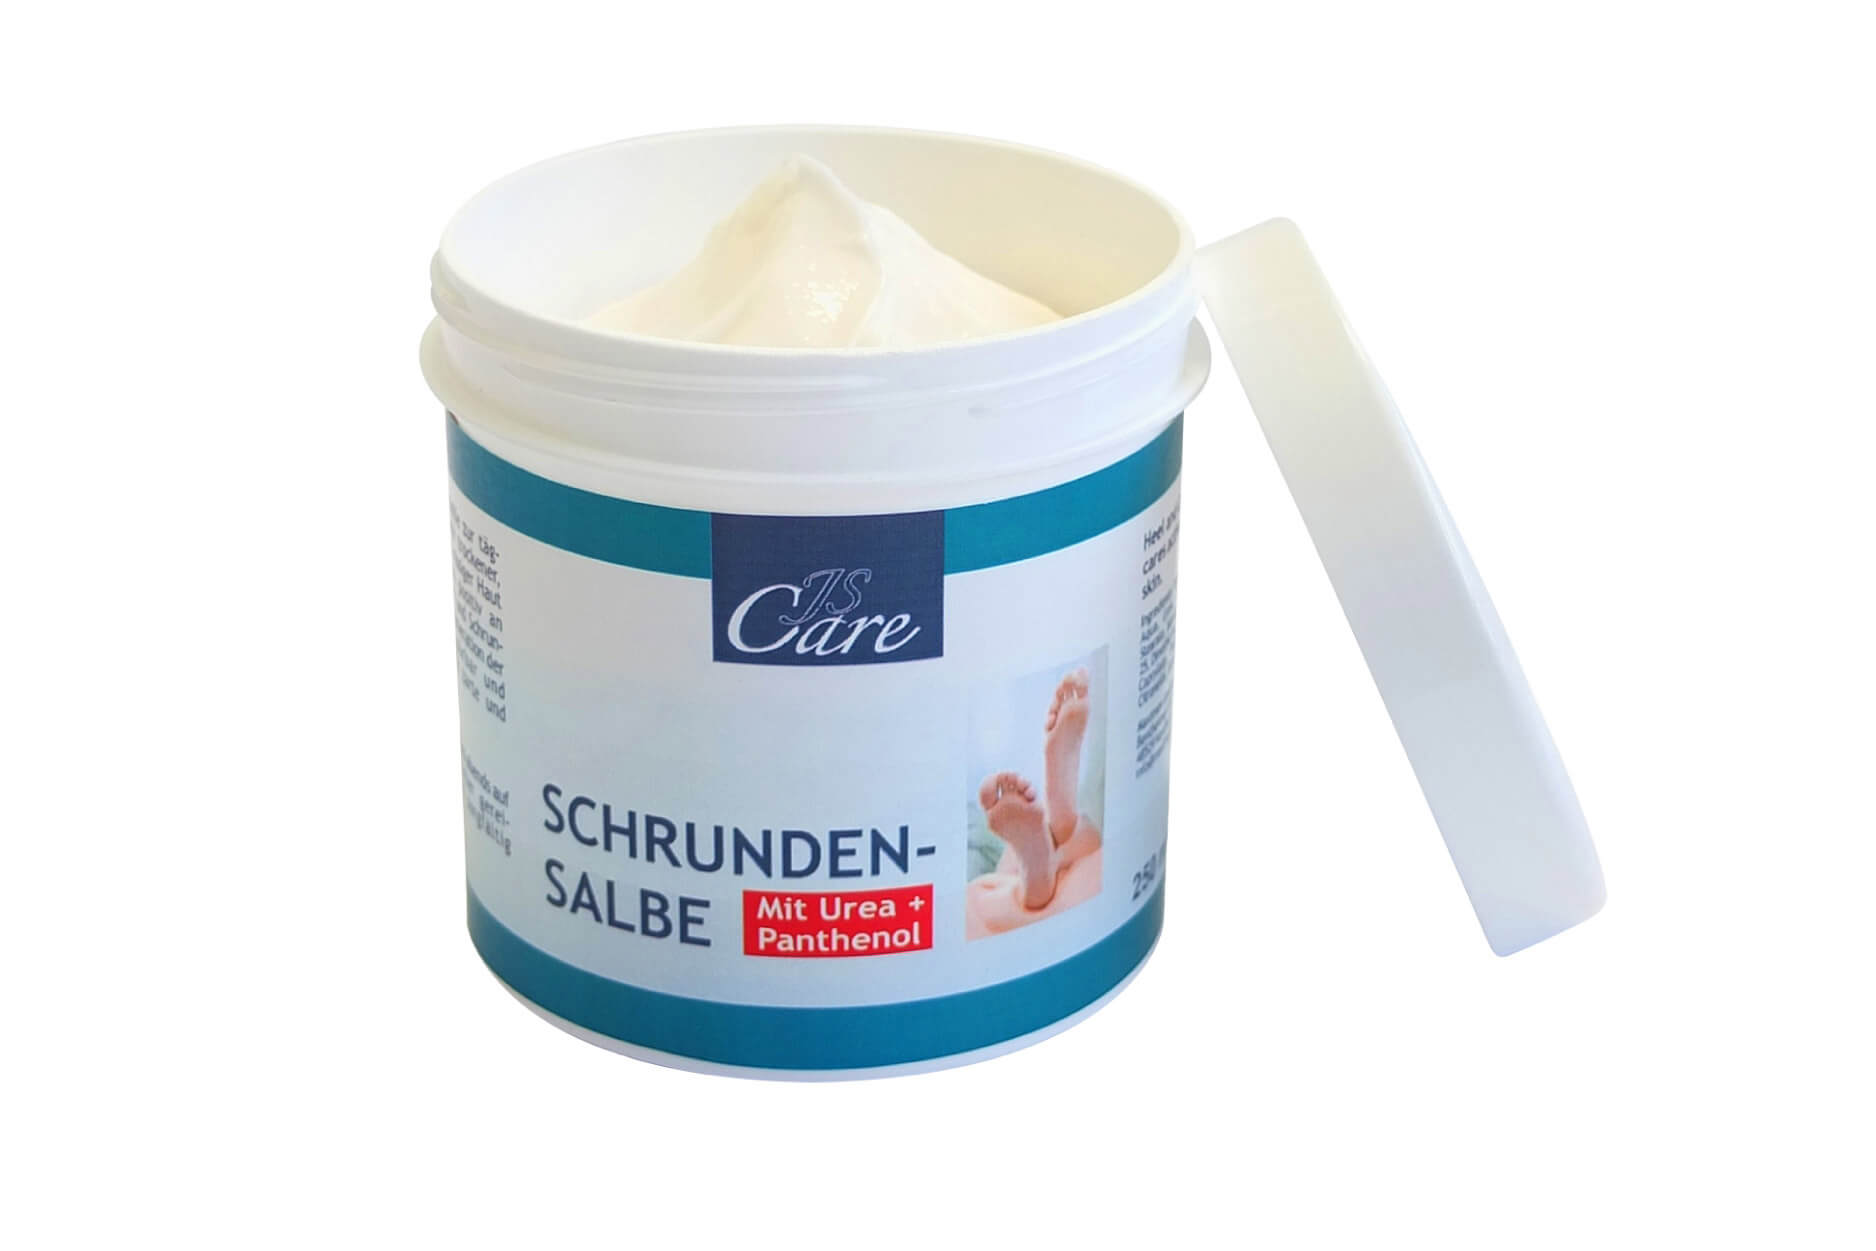 JS Care Schrundensalbe, 250 ml, 2er-Set